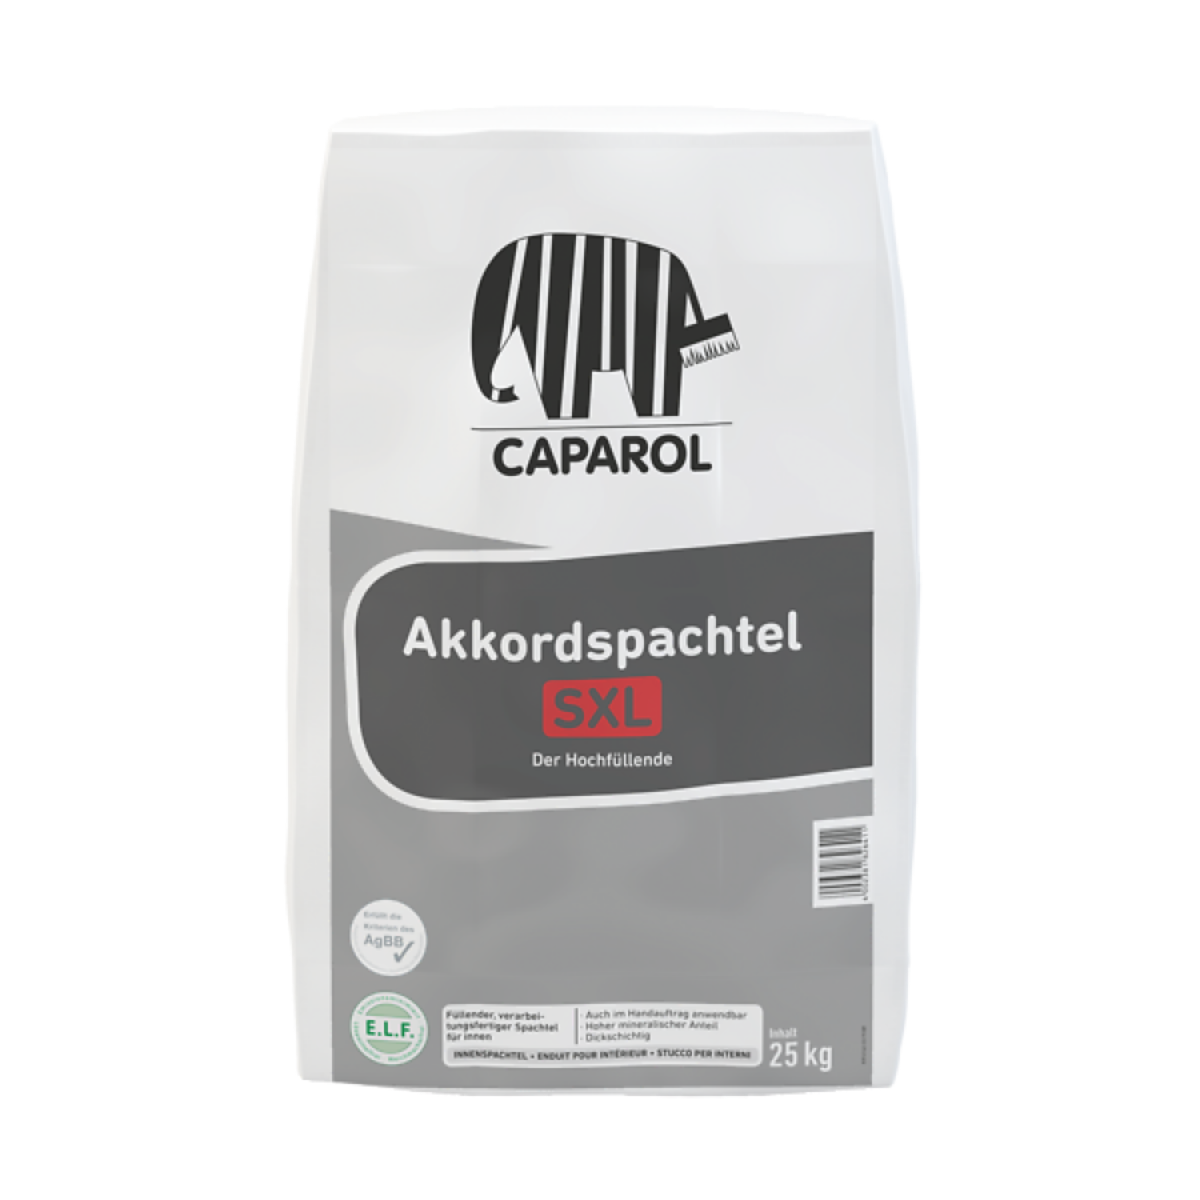 Caparol Akkordspachtel SXL Sack Izsmidzināšanai gatava špakteles masa